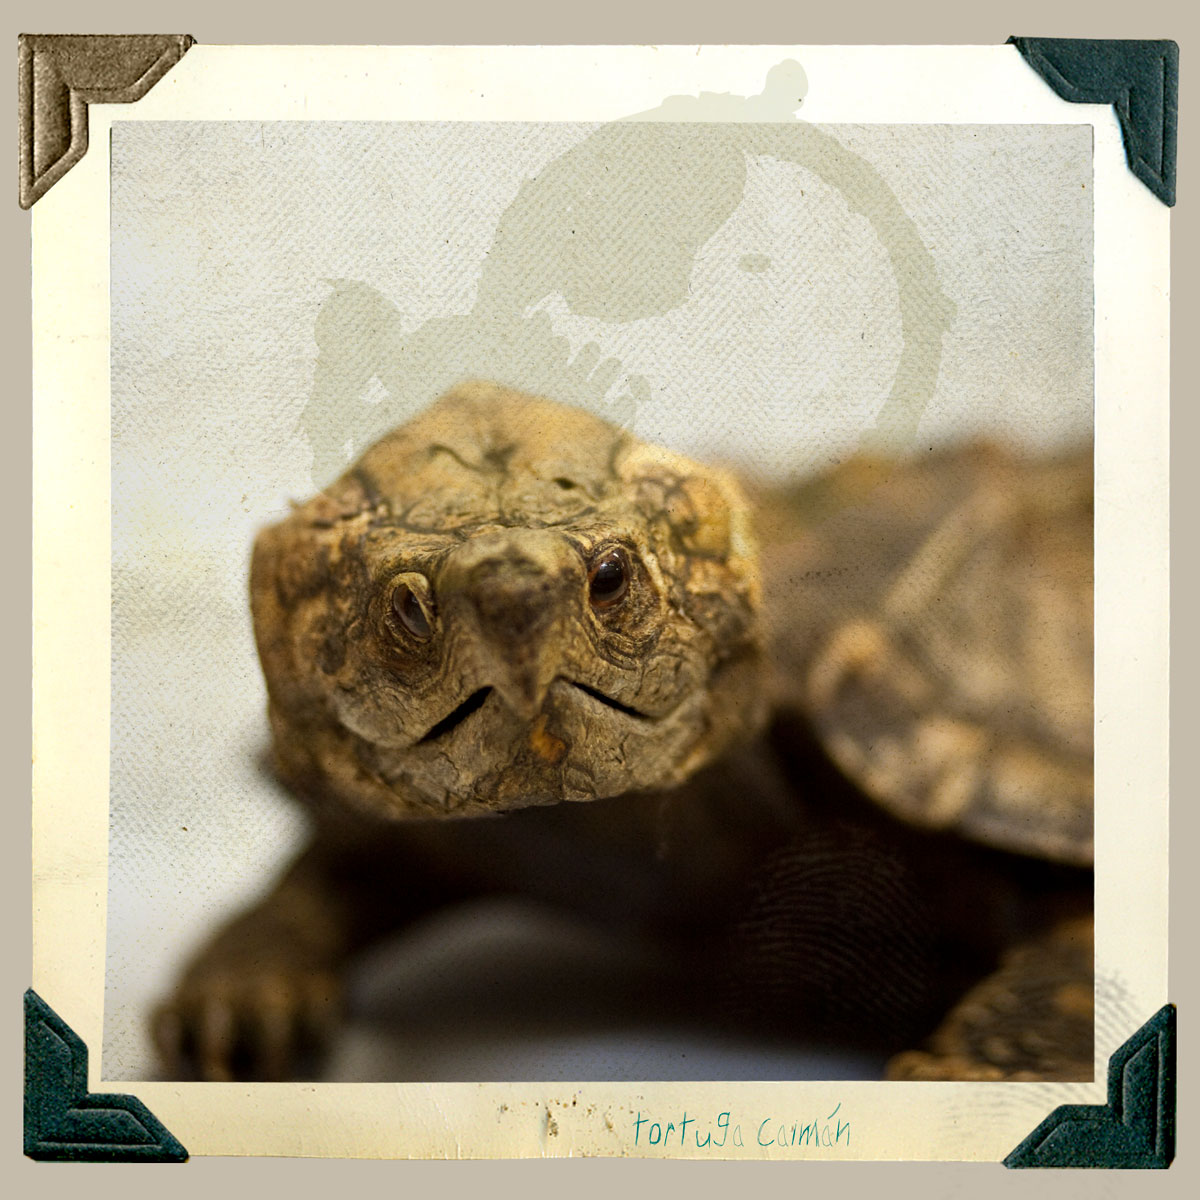 tortuga caiman animal disecado anaima